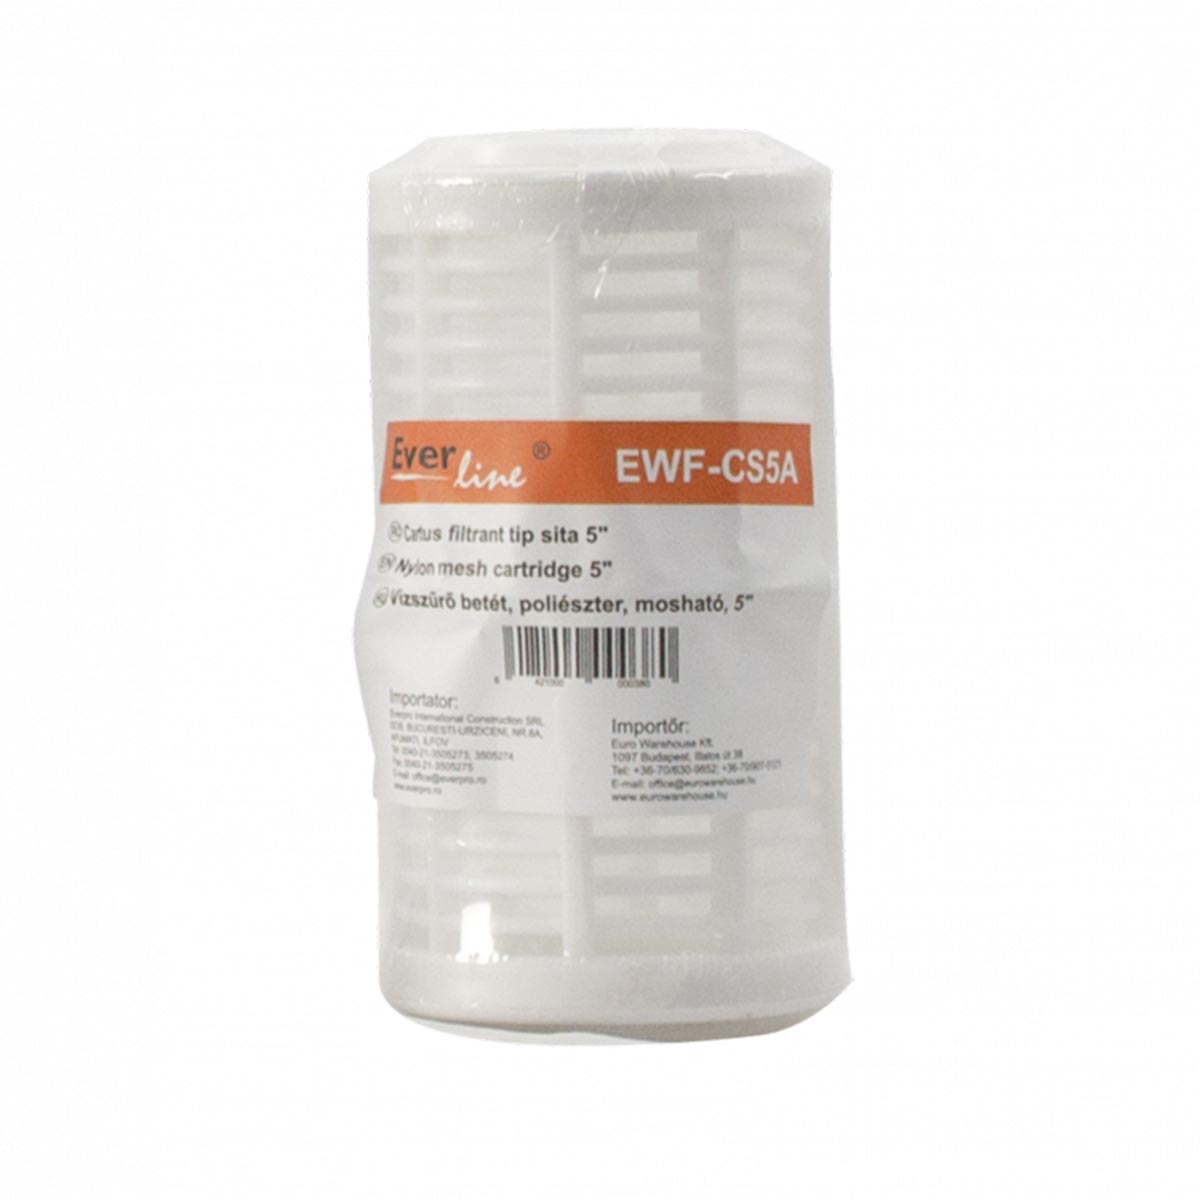 Cartus filtrant tip sita, lungime 5 Everline, EWF-CS5